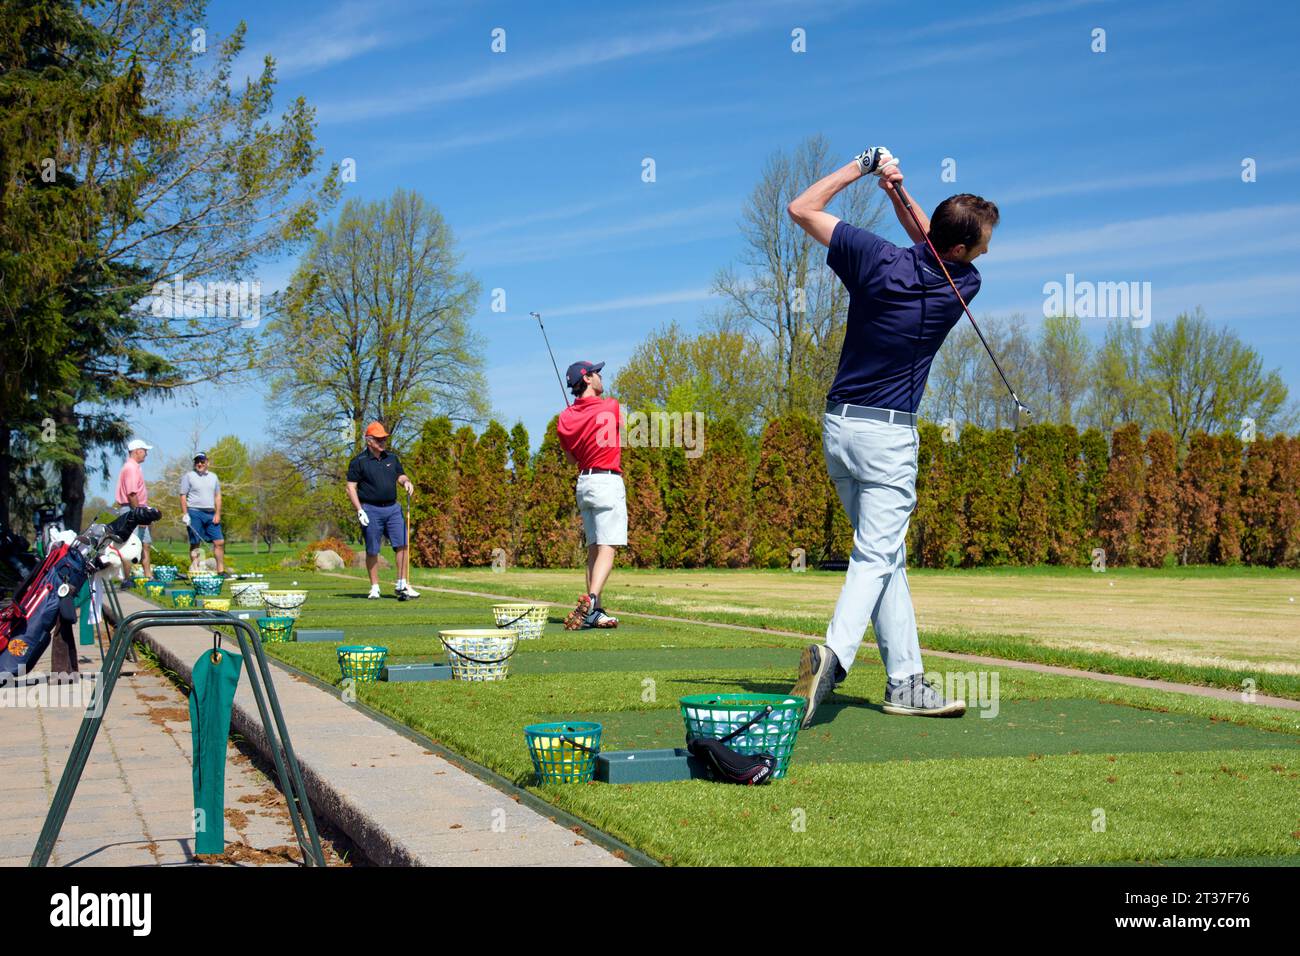 Golfeurs pratiquant leur swing sur un practice Banque D'Images